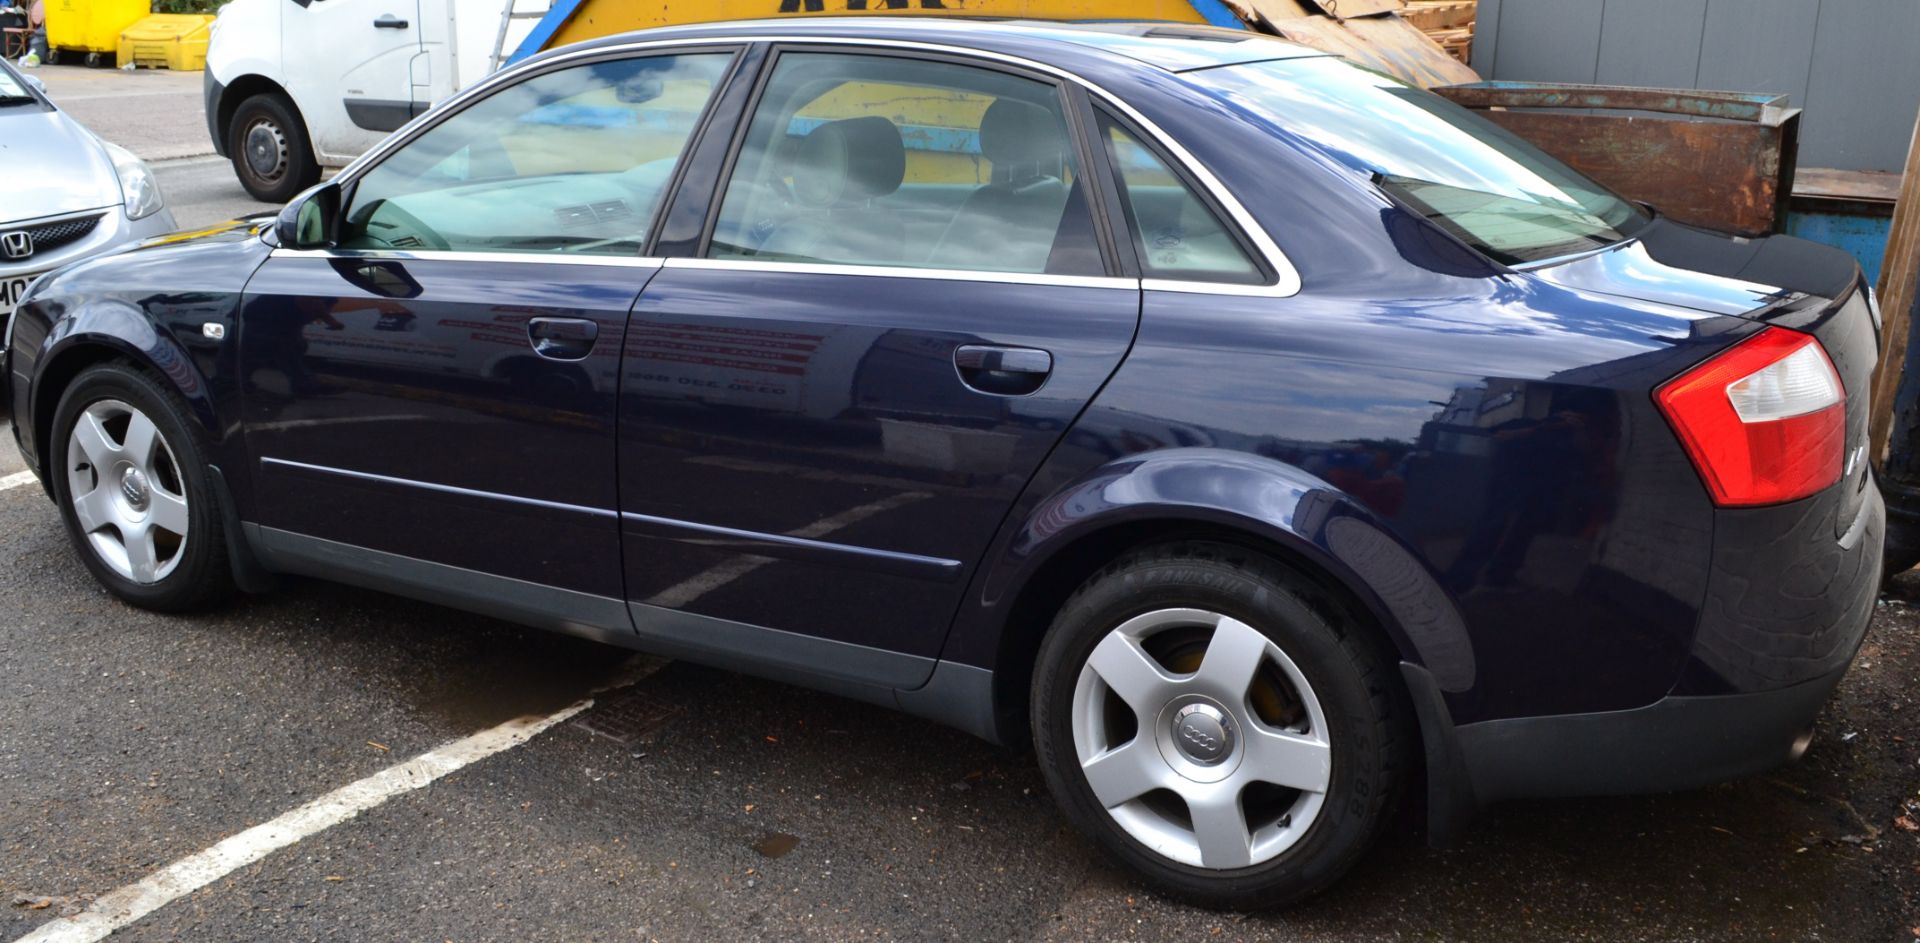 2001 Audi A4 SE Auto in Dark Blue 2.4L Petrol (Non Runner) - CL011 - Location: Altrincham WA14 - Image 13 of 13